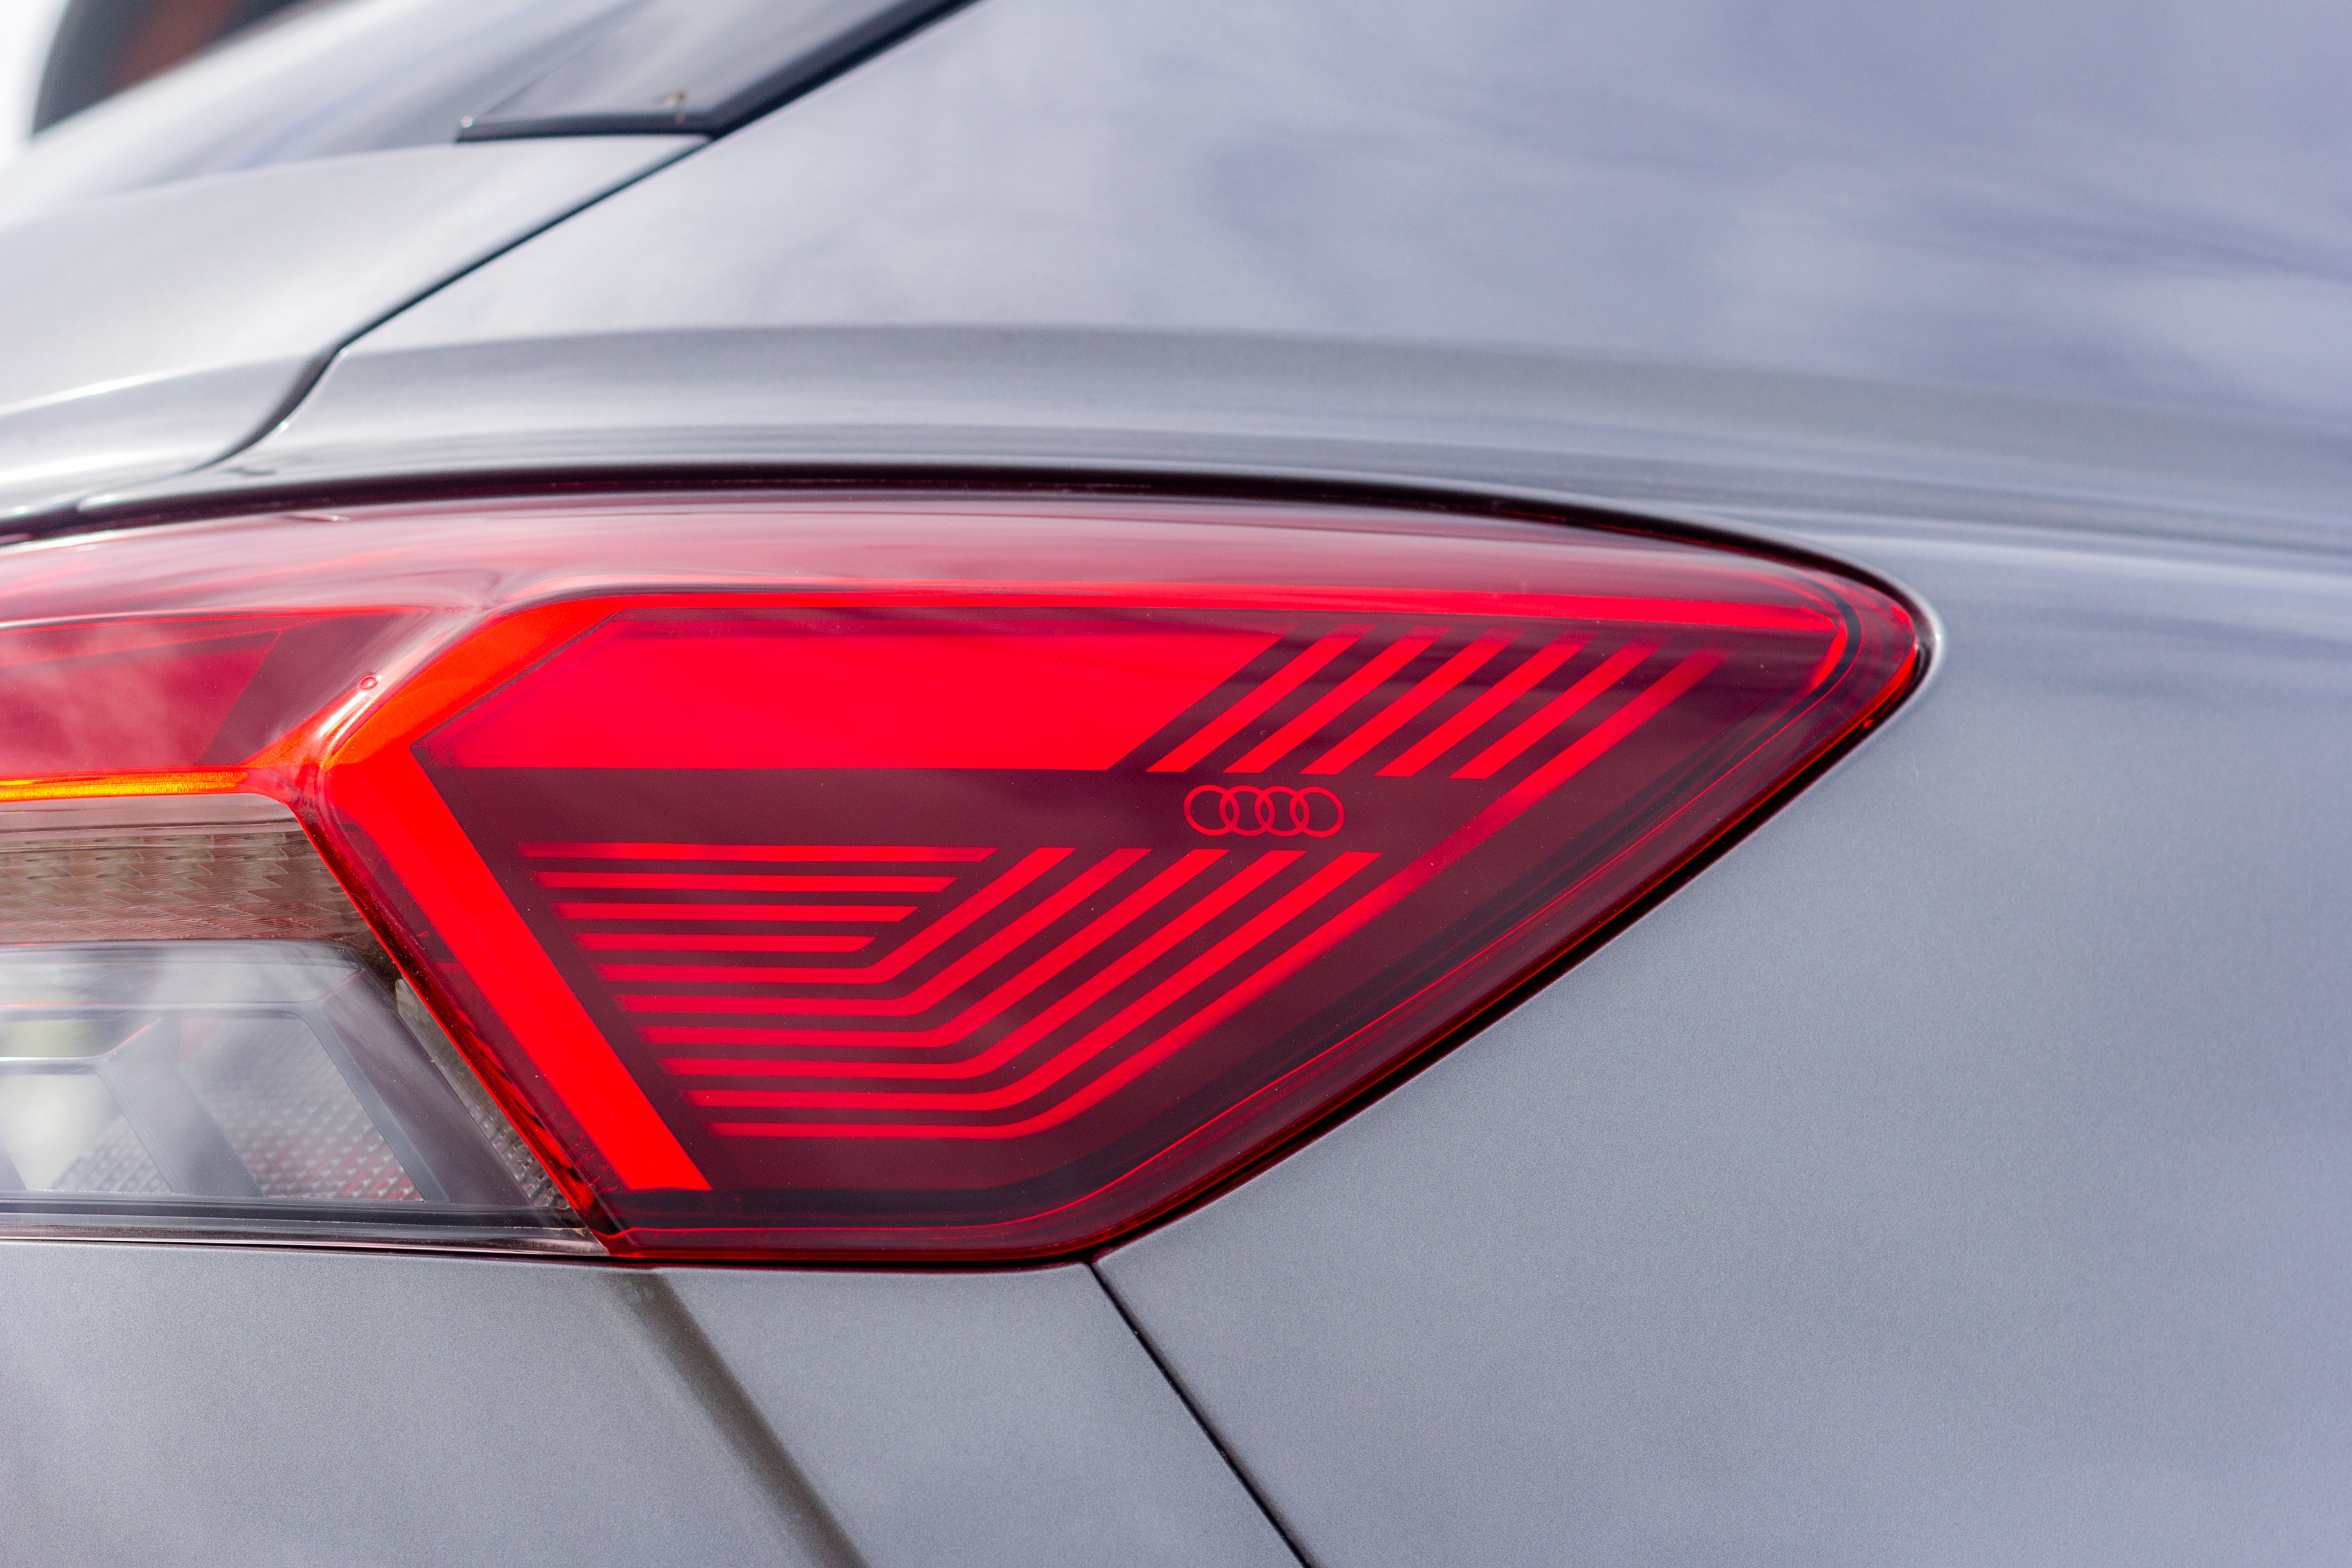 Audi Q4 e-tron - Signature lumineuse